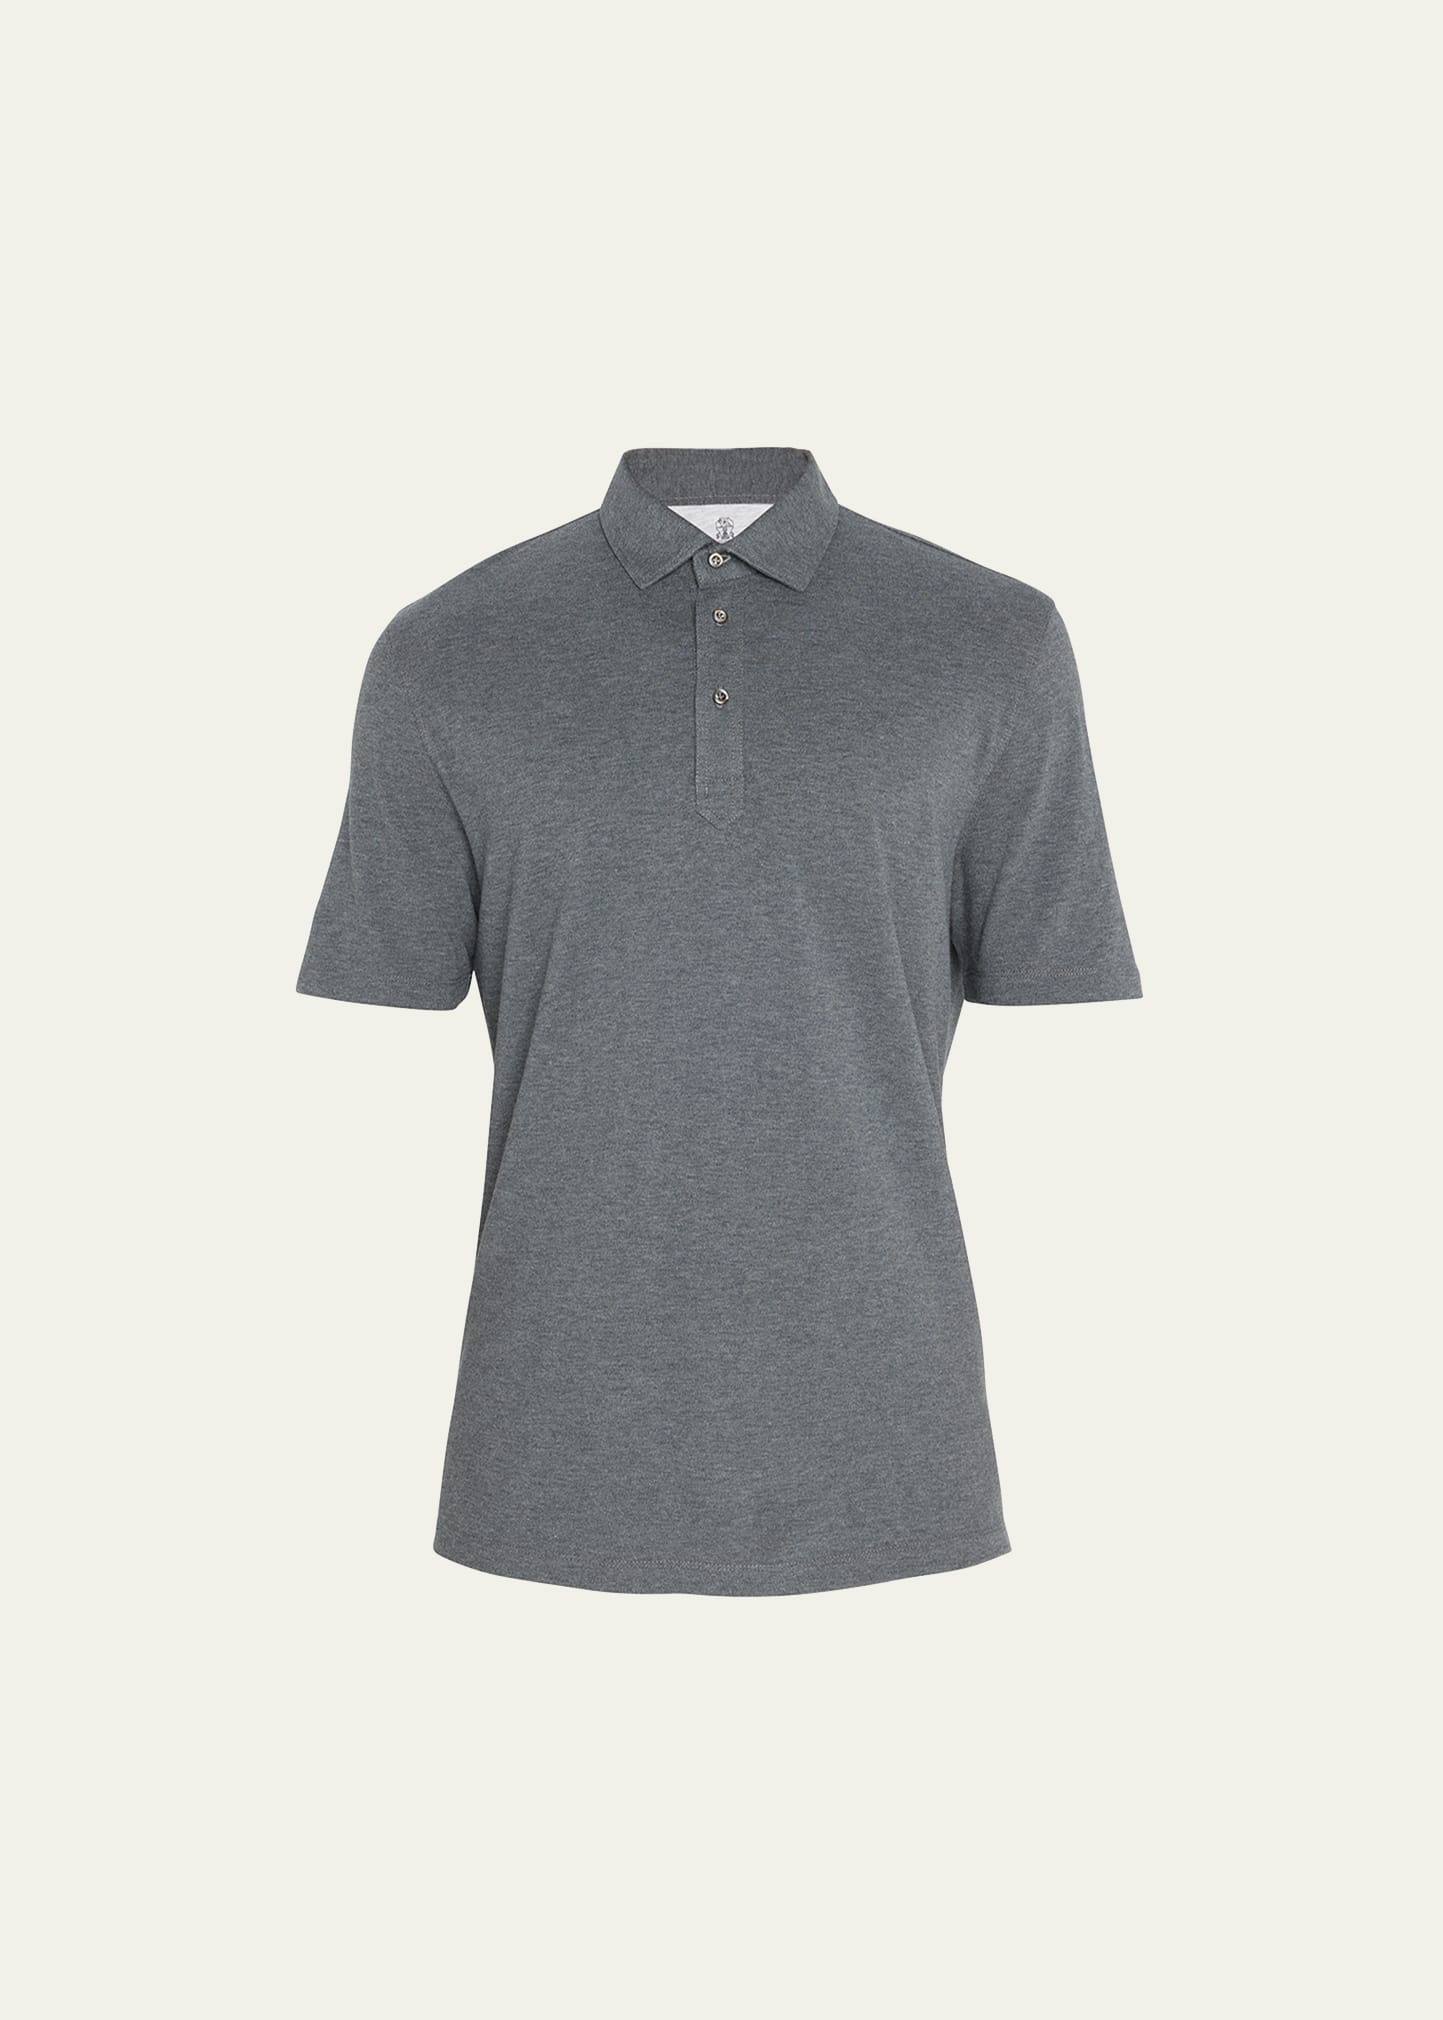 Brunello Cucinelli Men's Cotton Piqué Polo Shirt In Dark Grey